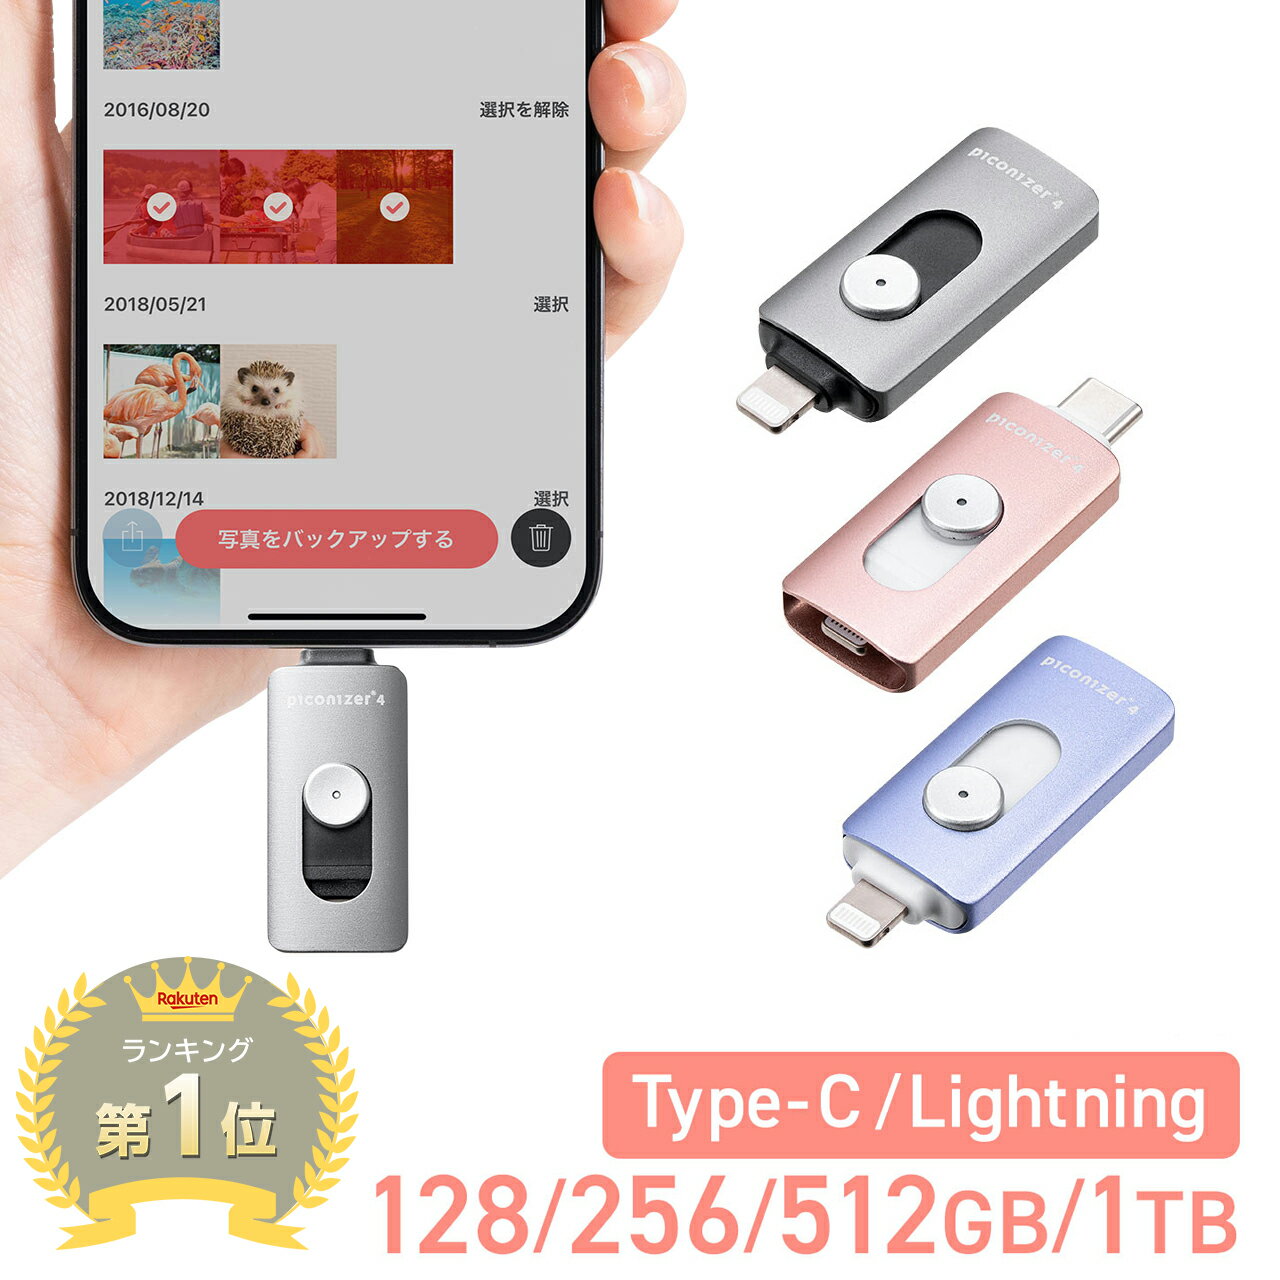  yV1ʎ  Lightning Type-C USB sRiCU[ Piconizer4 iPhone Android Ή obNAbv MFiF iPad USB 128GB 256GB 512GB 1TB f[^ ۑ 10Gbps sRiCU[4 p|[`t